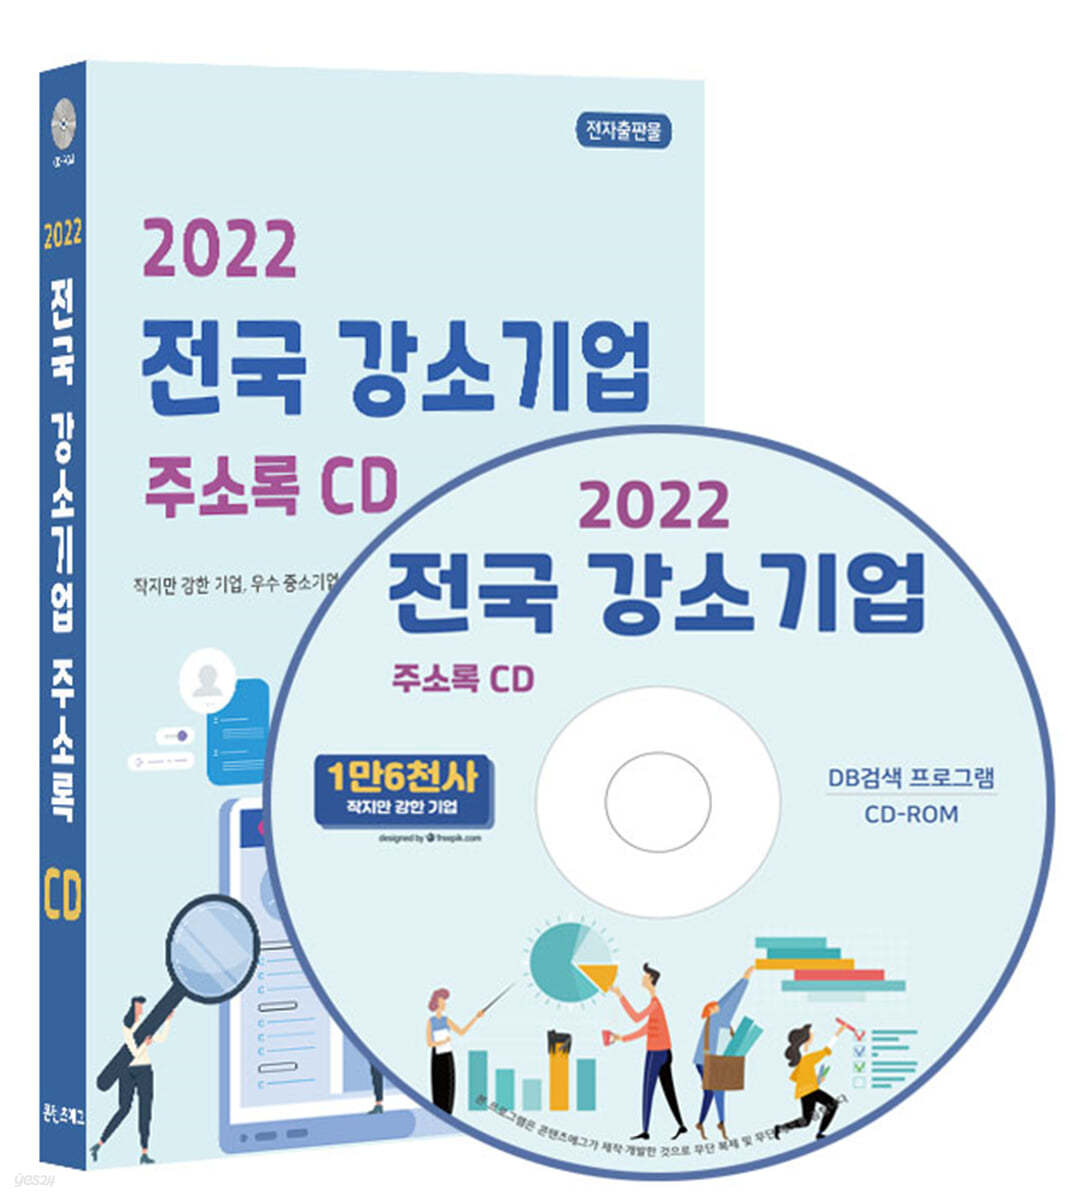 2022 전국 강소기업 주소록 CD 